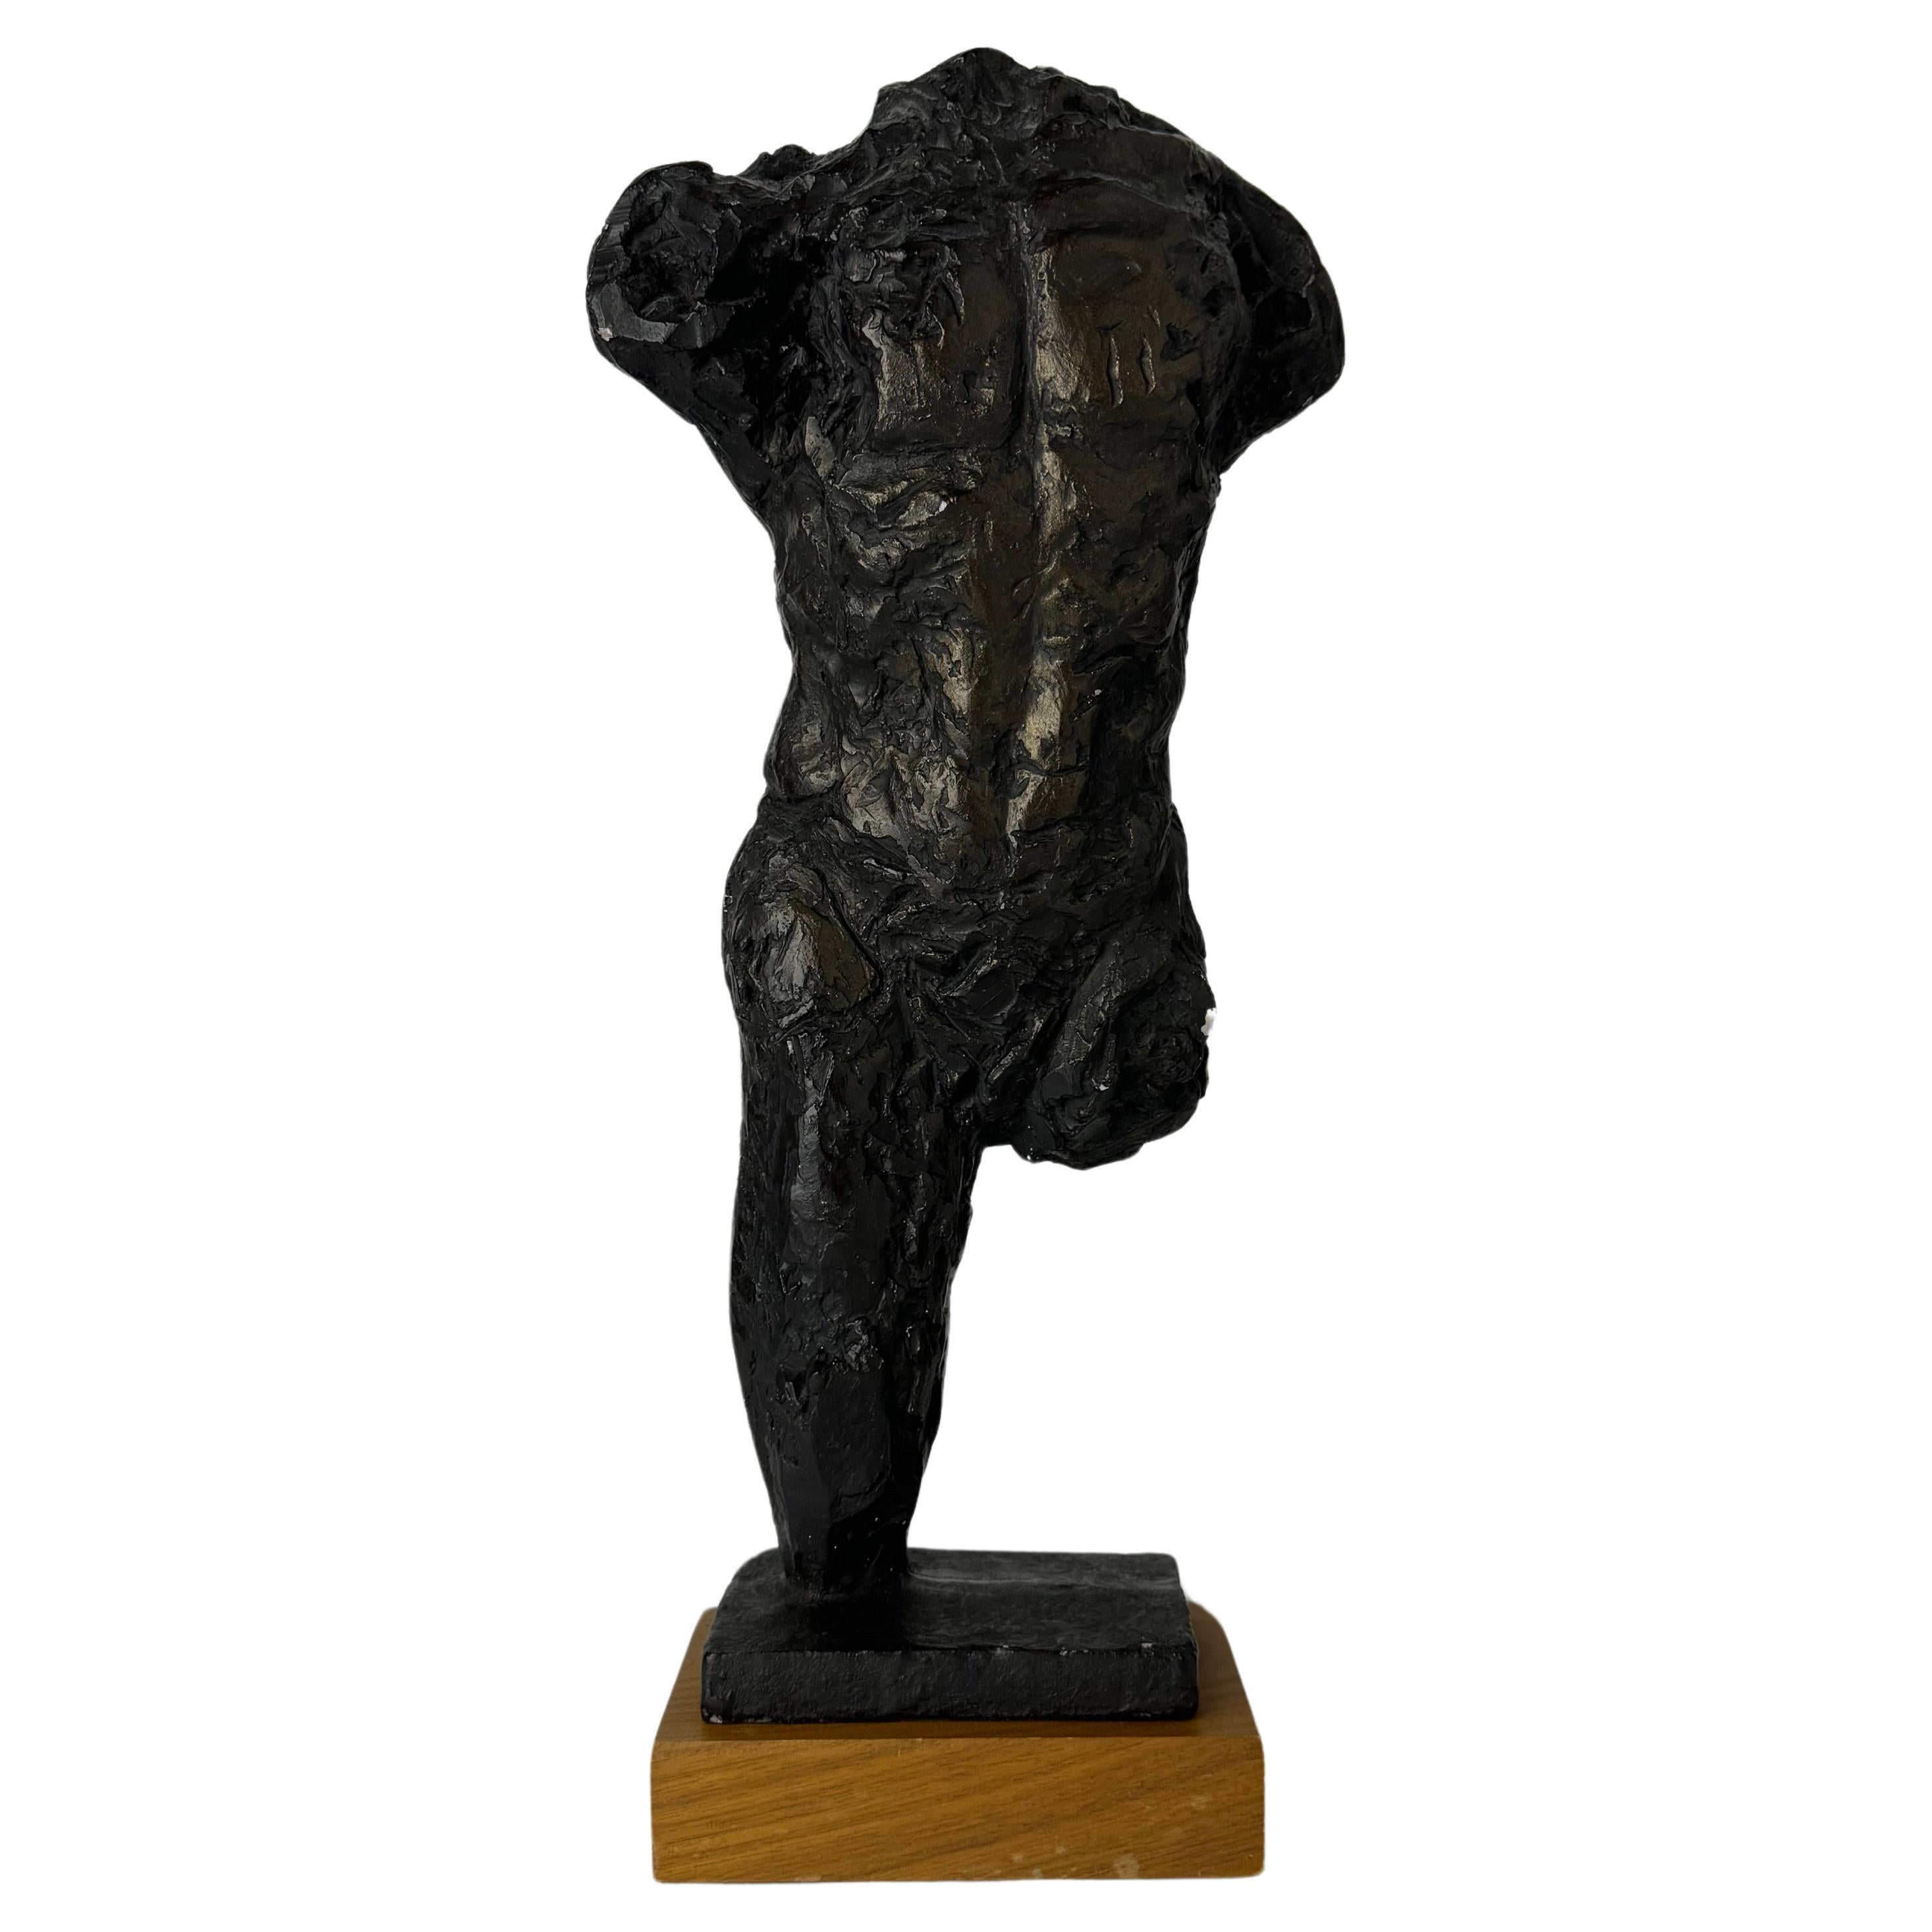 Sculpture de Rodin « Le marcheur, étude pour le torse », Austin Productions, 1963